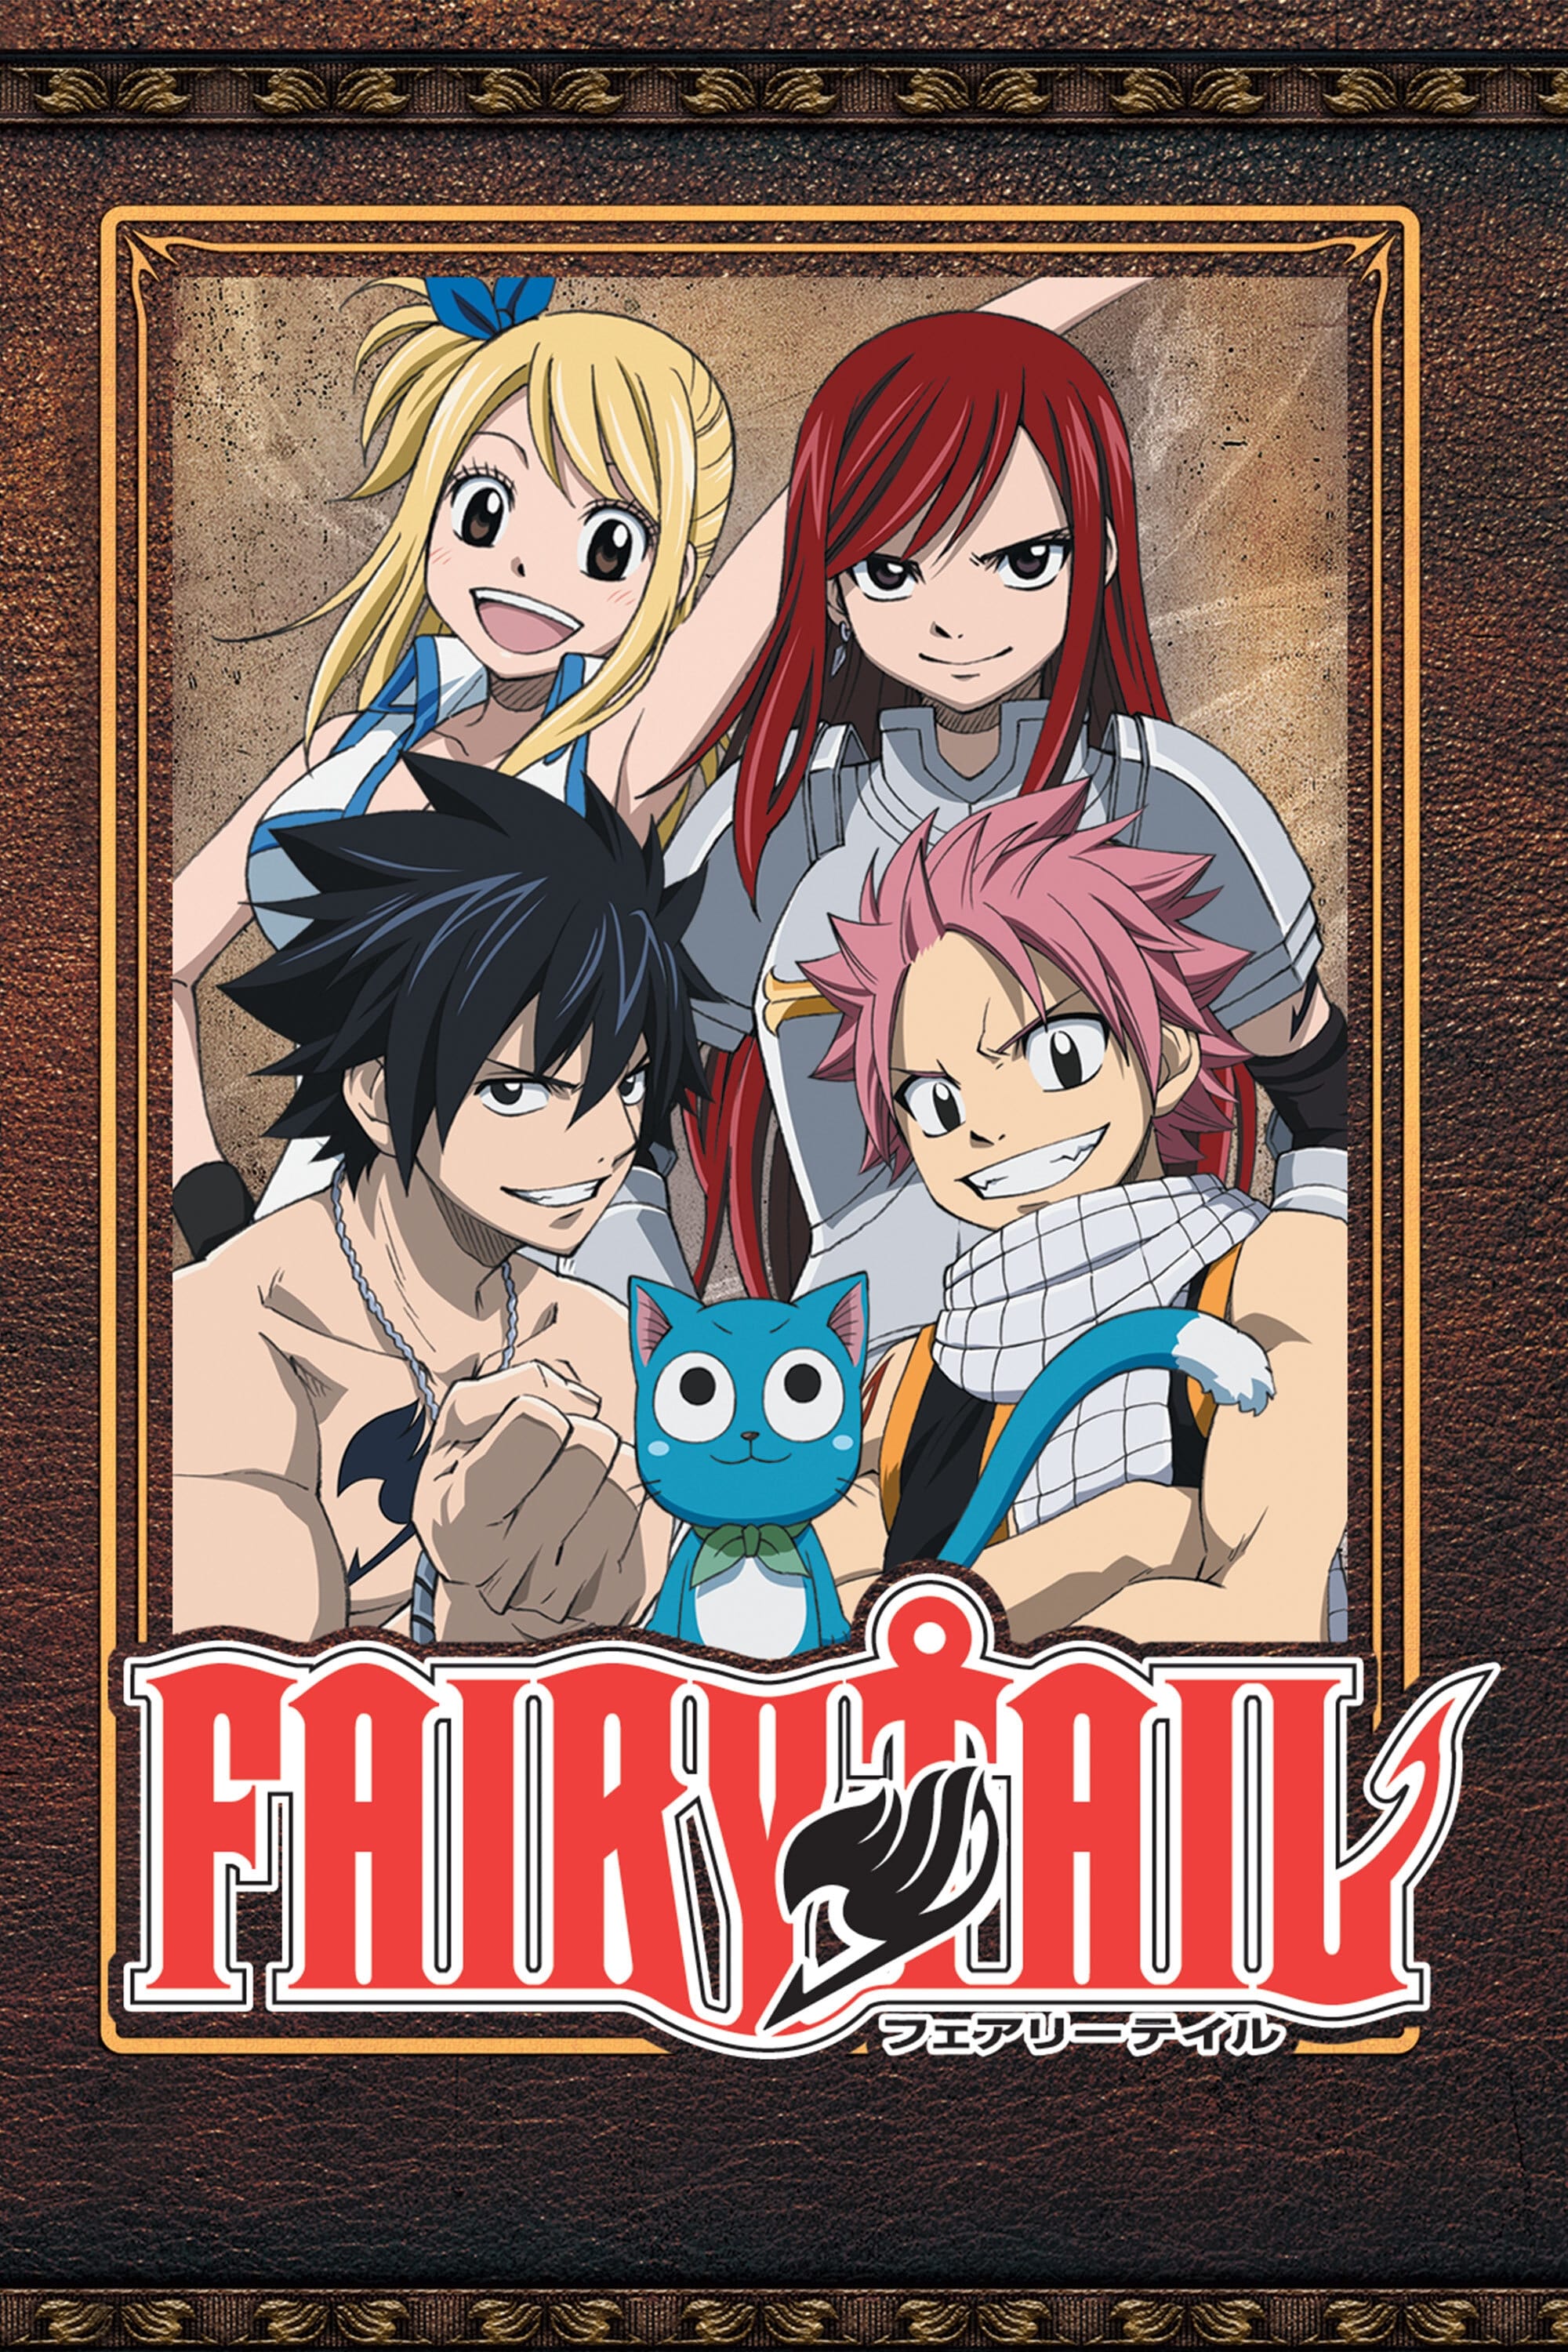 Fairy Tail (TV Series 2009-2019) - Cast & Crew — The Movie Database (TMDB)